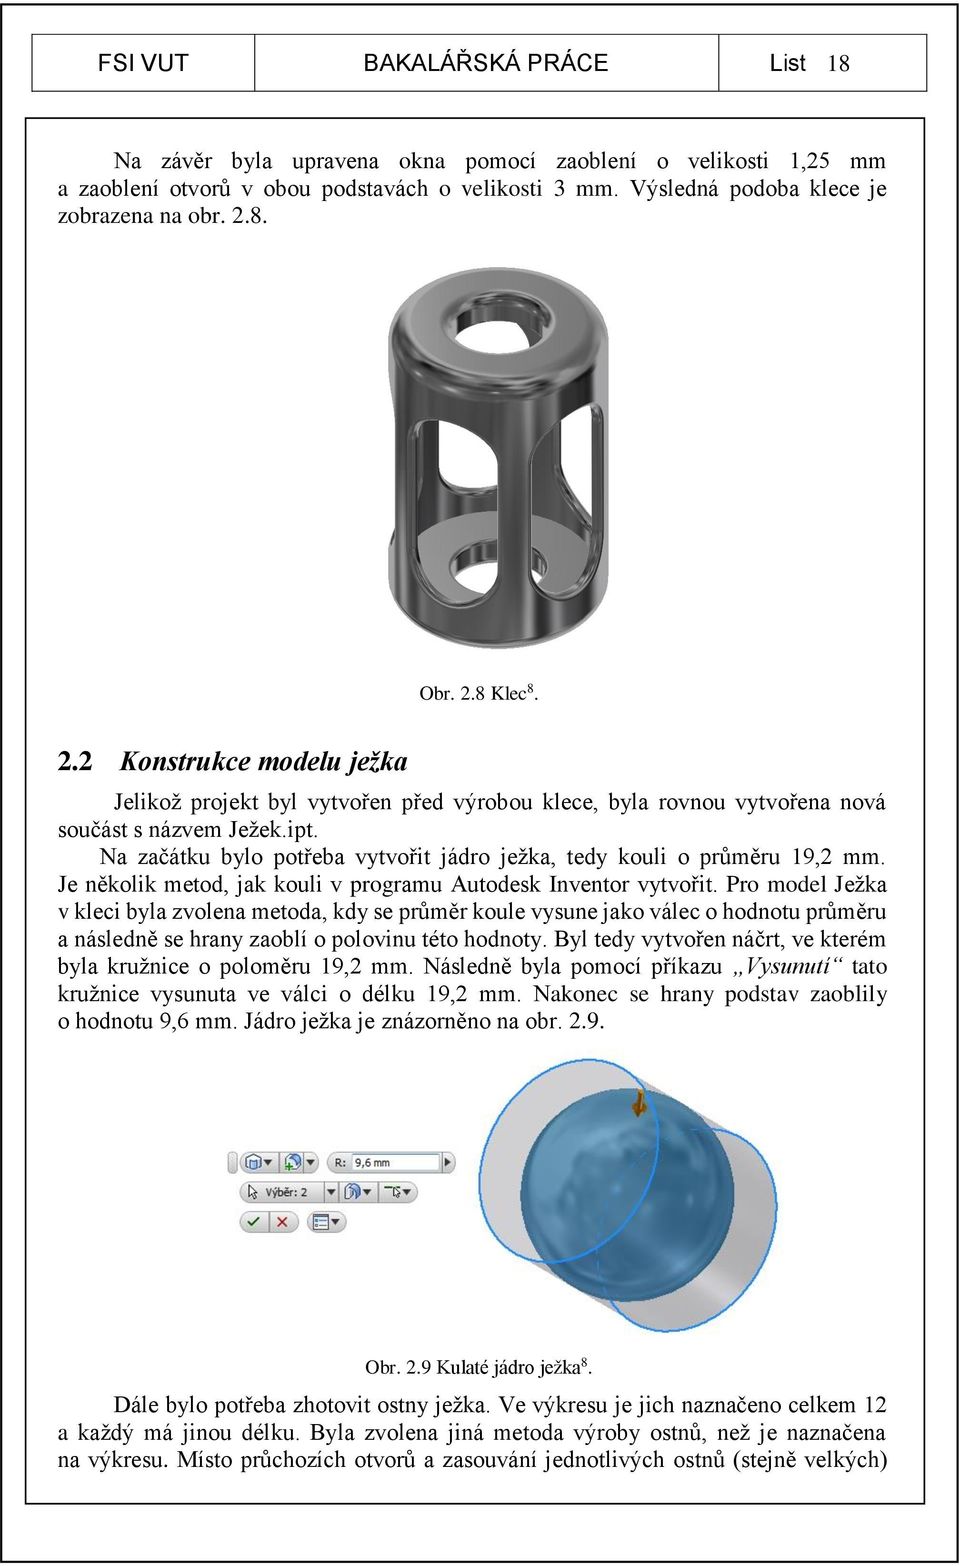 Na začátku bylo potřeba vytvořit jádro ježka, tedy kouli o průměru 19,2 mm. Je několik metod, jak kouli v programu Autodesk Inventor vytvořit.